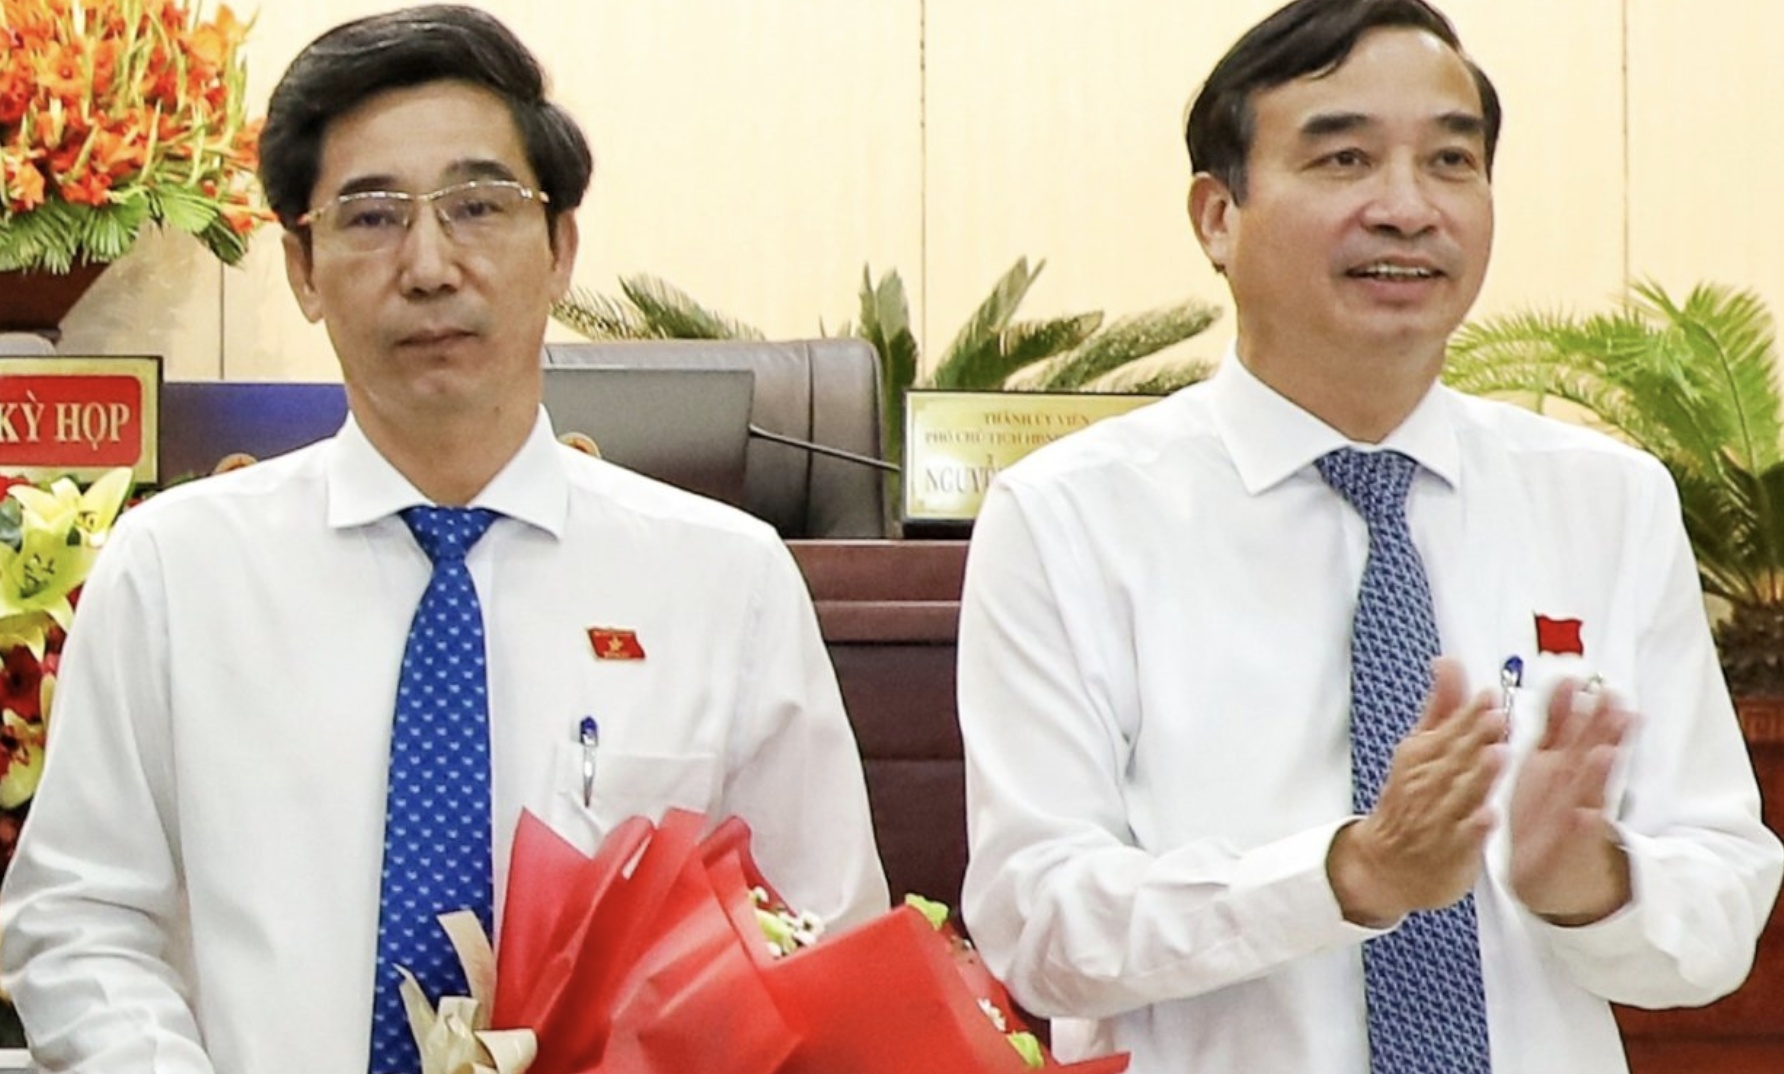 Ông Trần Chí Cường làm Phó Chủ tịch UBND TP. Đà Nẵng